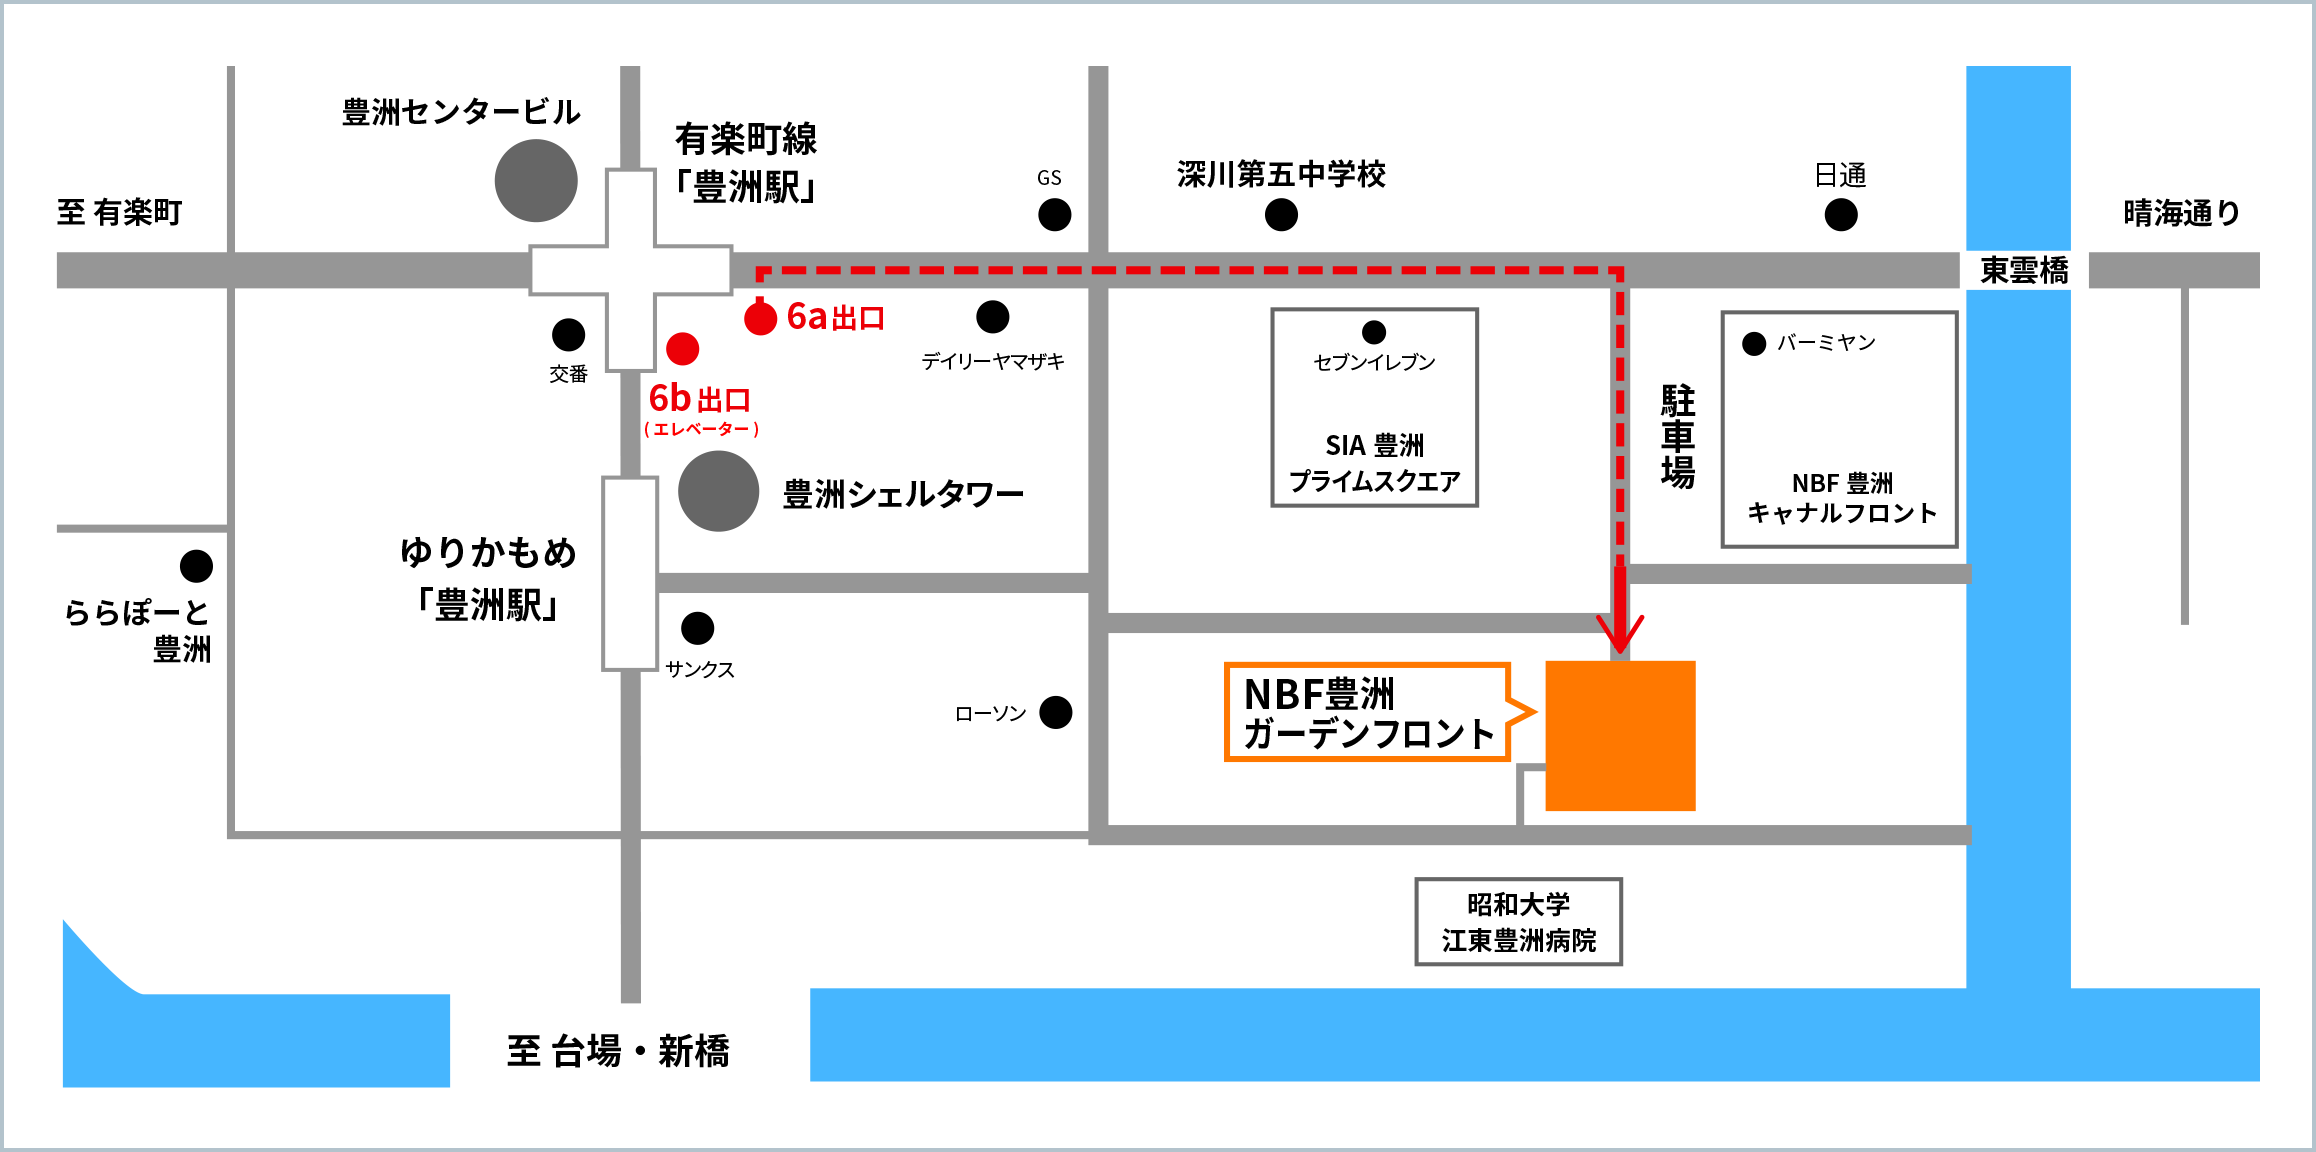 NBF豊洲ガーデンフロント及び最寄り駅である東京メトロ有楽町線豊洲駅6a、6b出口付近とゆりかもめ豊洲駅周辺の地図